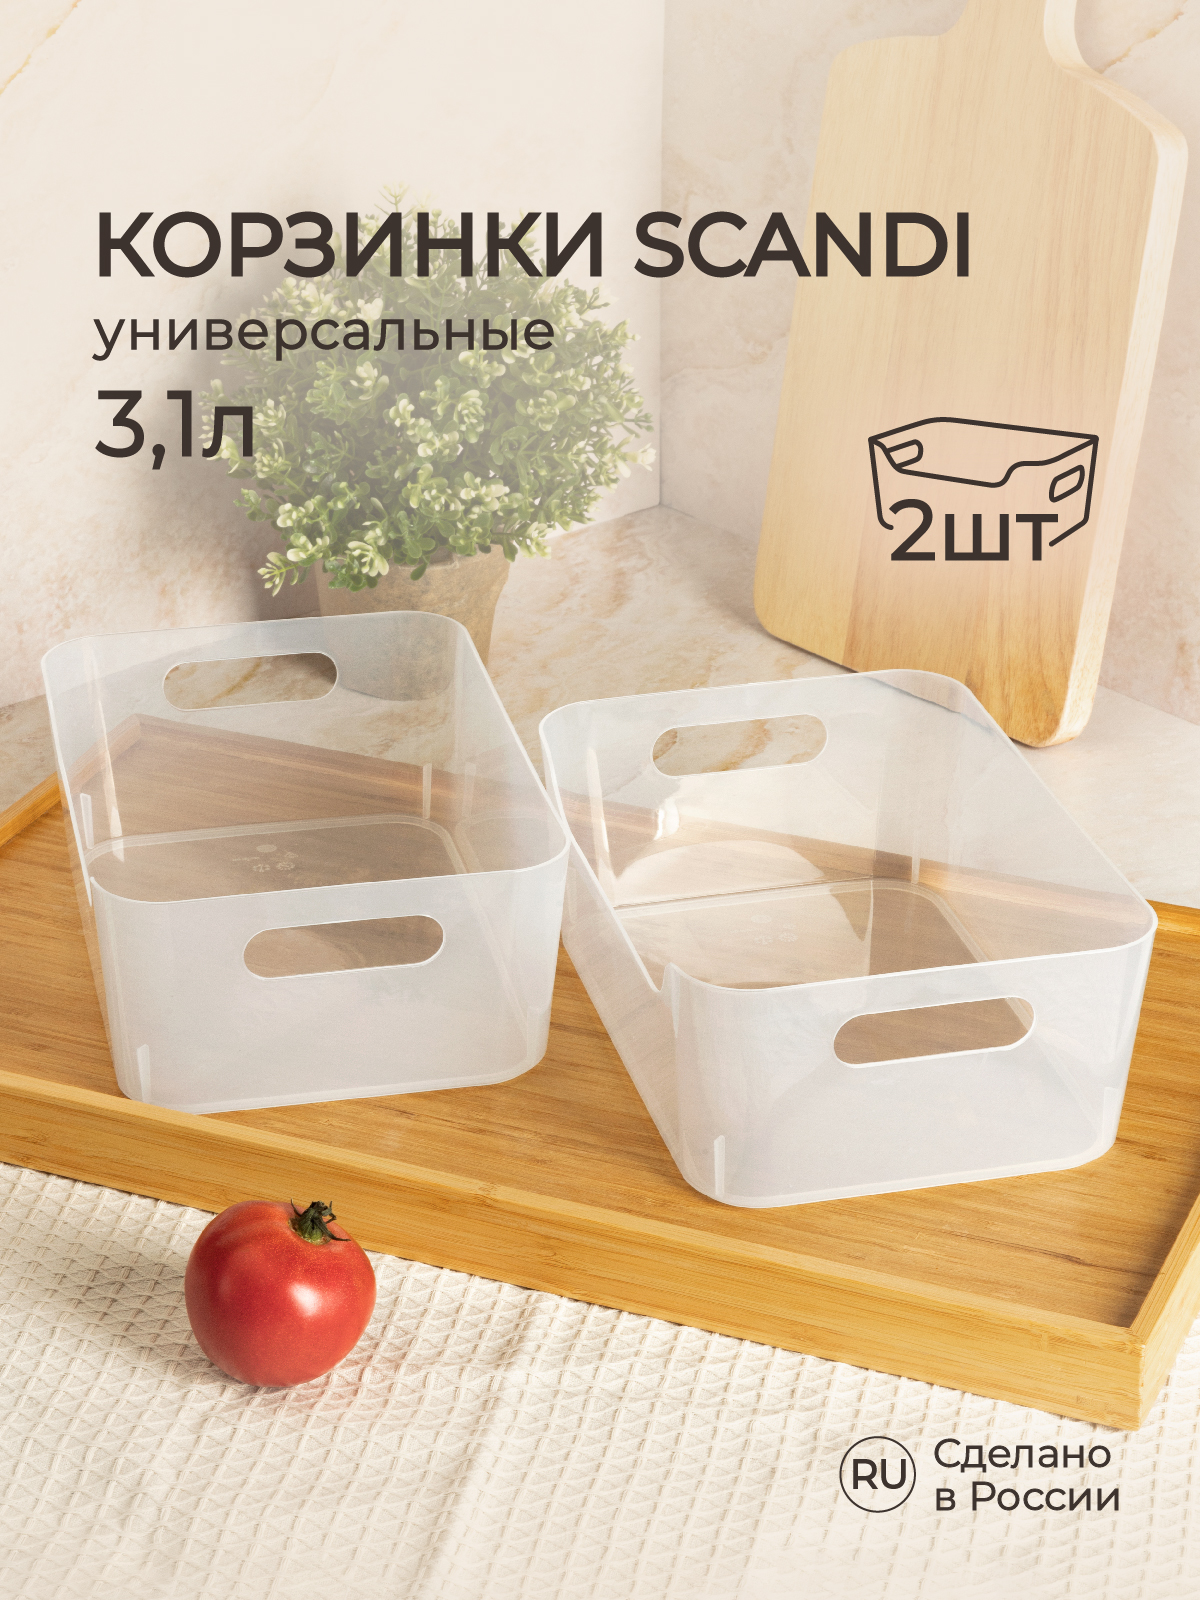 Комплект корзинок Phibo универсальных Scandi 240x170x90 мм 3.1л 2 шт бесцветный - фото 1